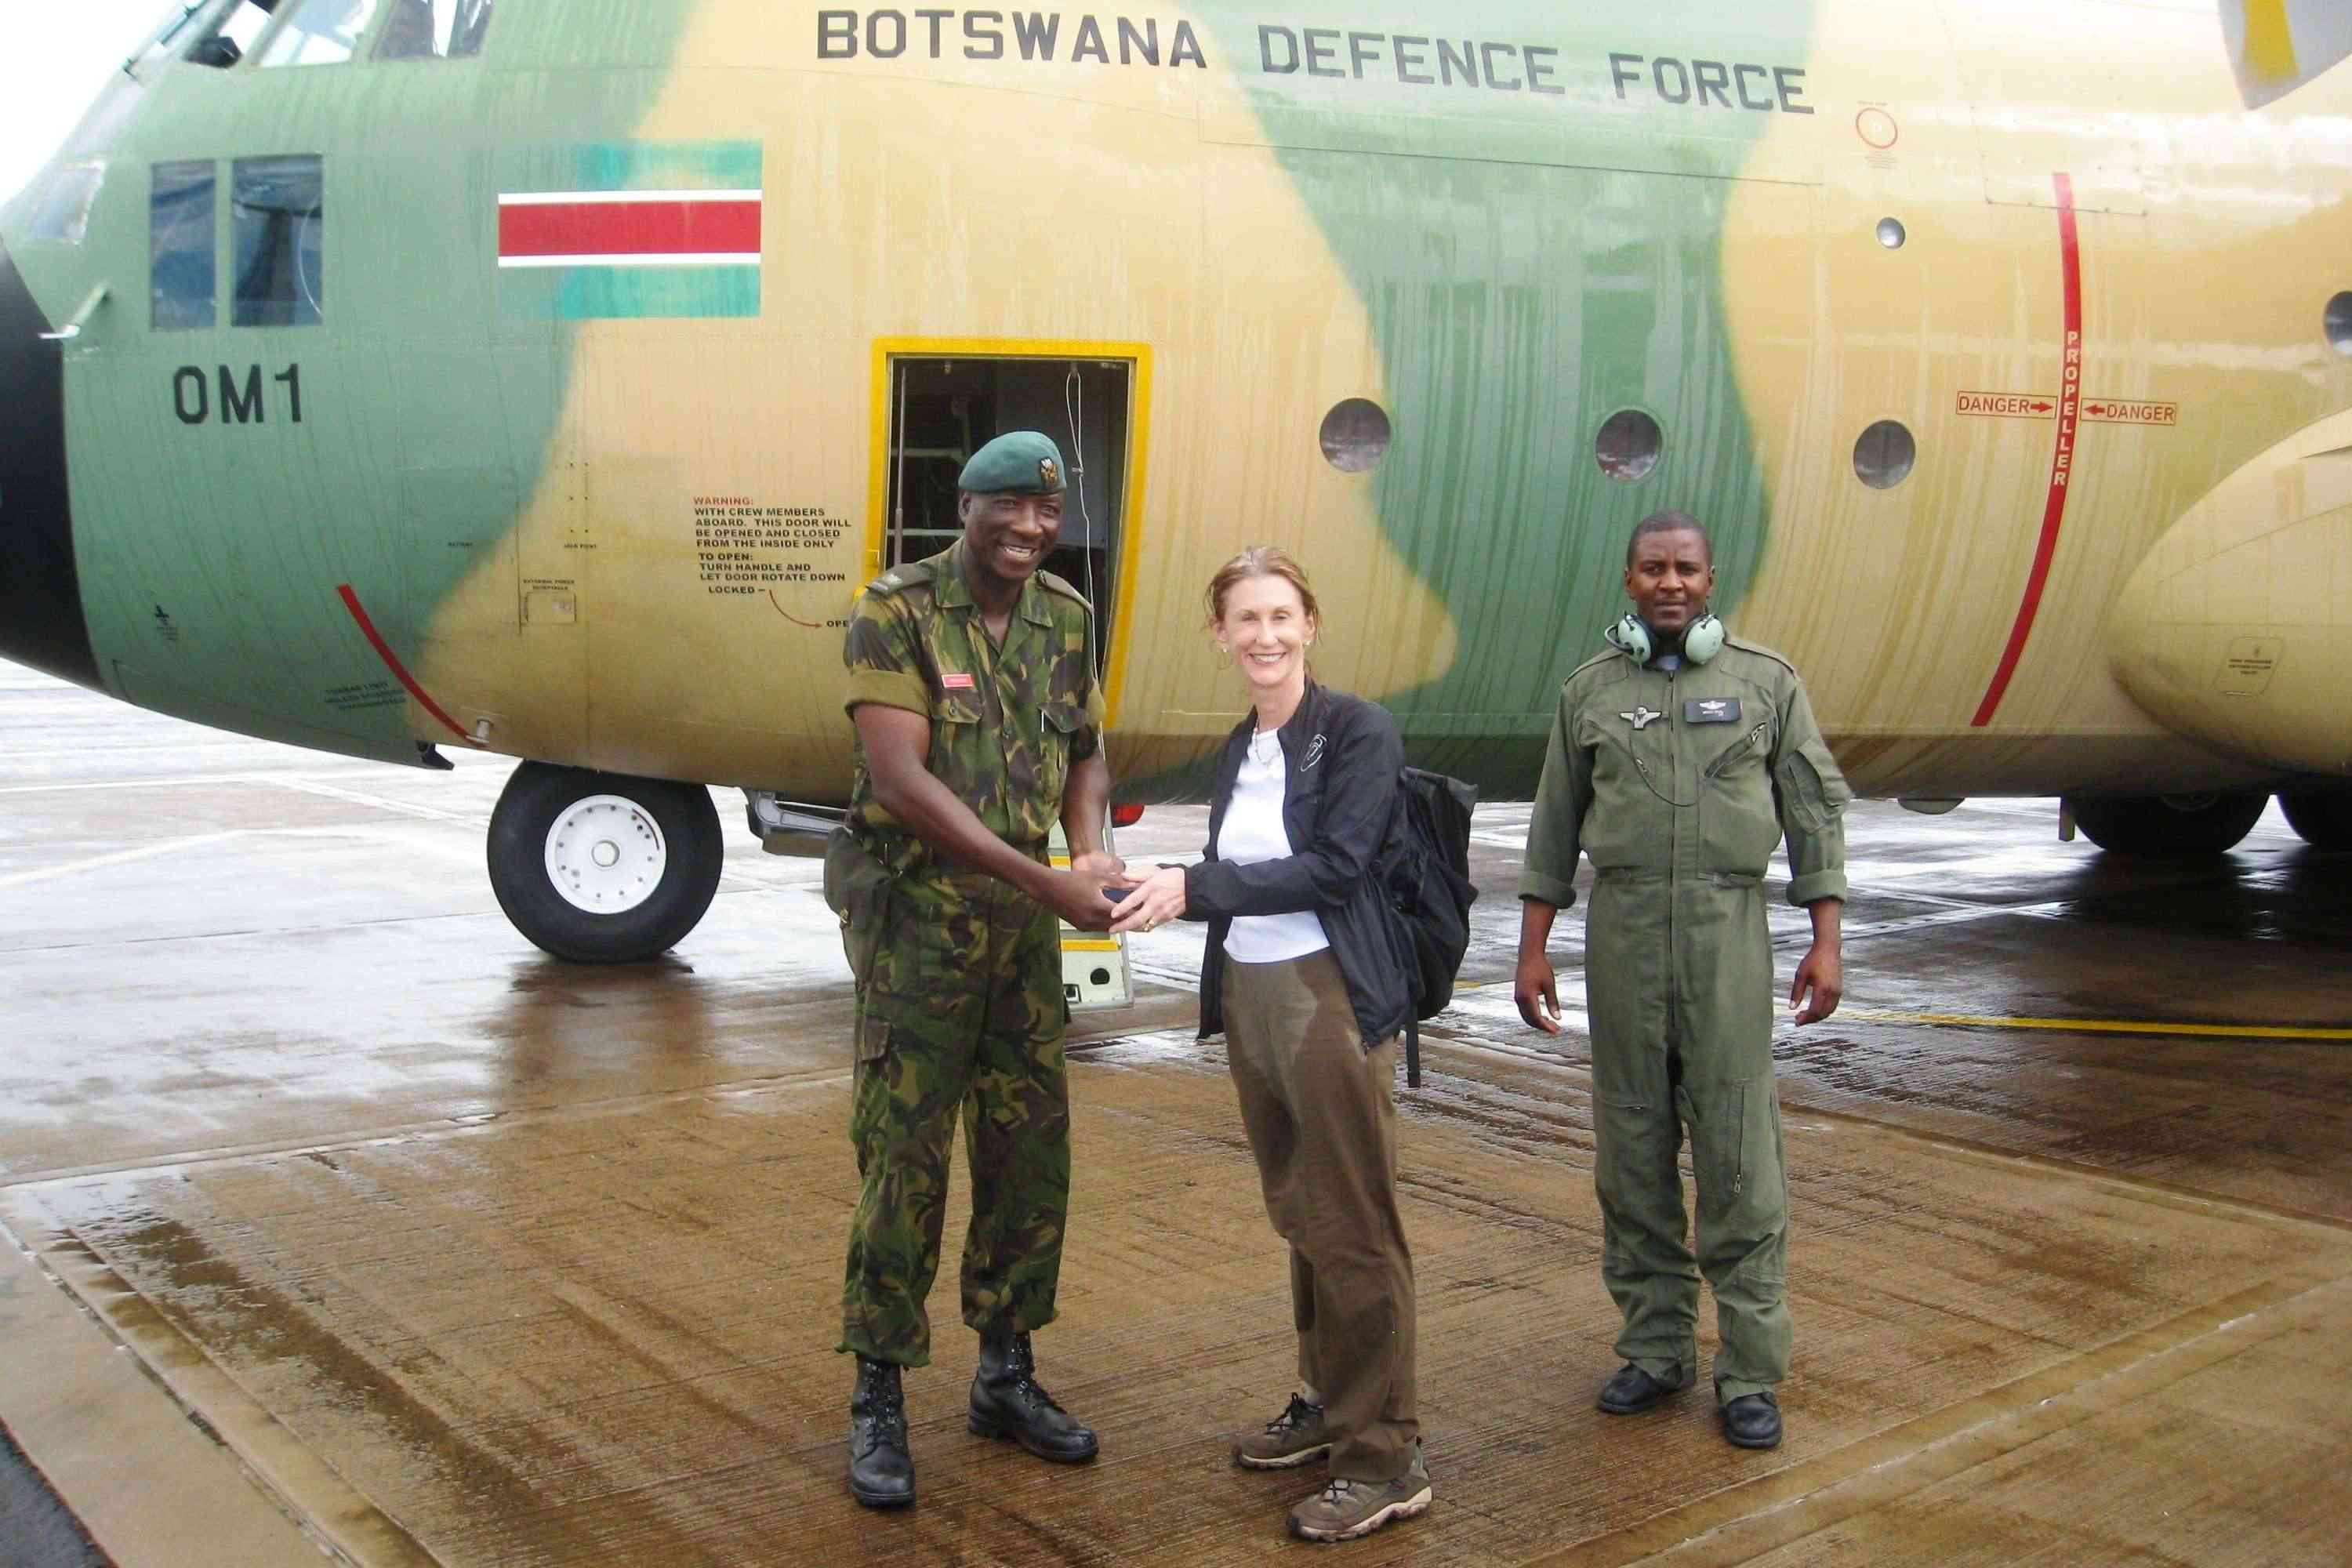 arm-e-du-botswana-botswana-defence-force